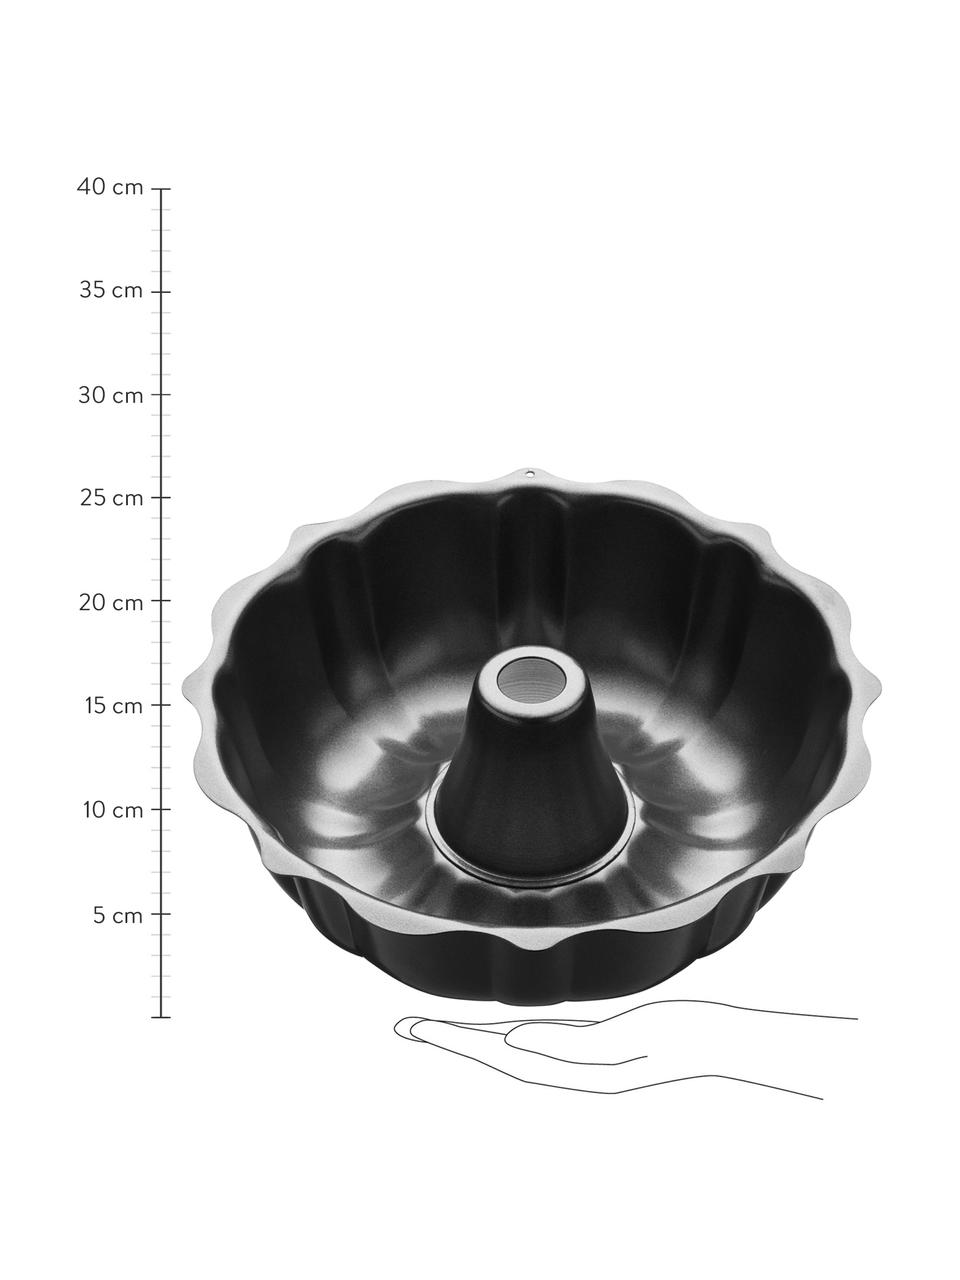 Kulatá forma na pečení s nepřilnavým povrchem MasterClass, Ocel s nepřilnavou vrstvou, Černá, Ø 27 cm, V 9 cm